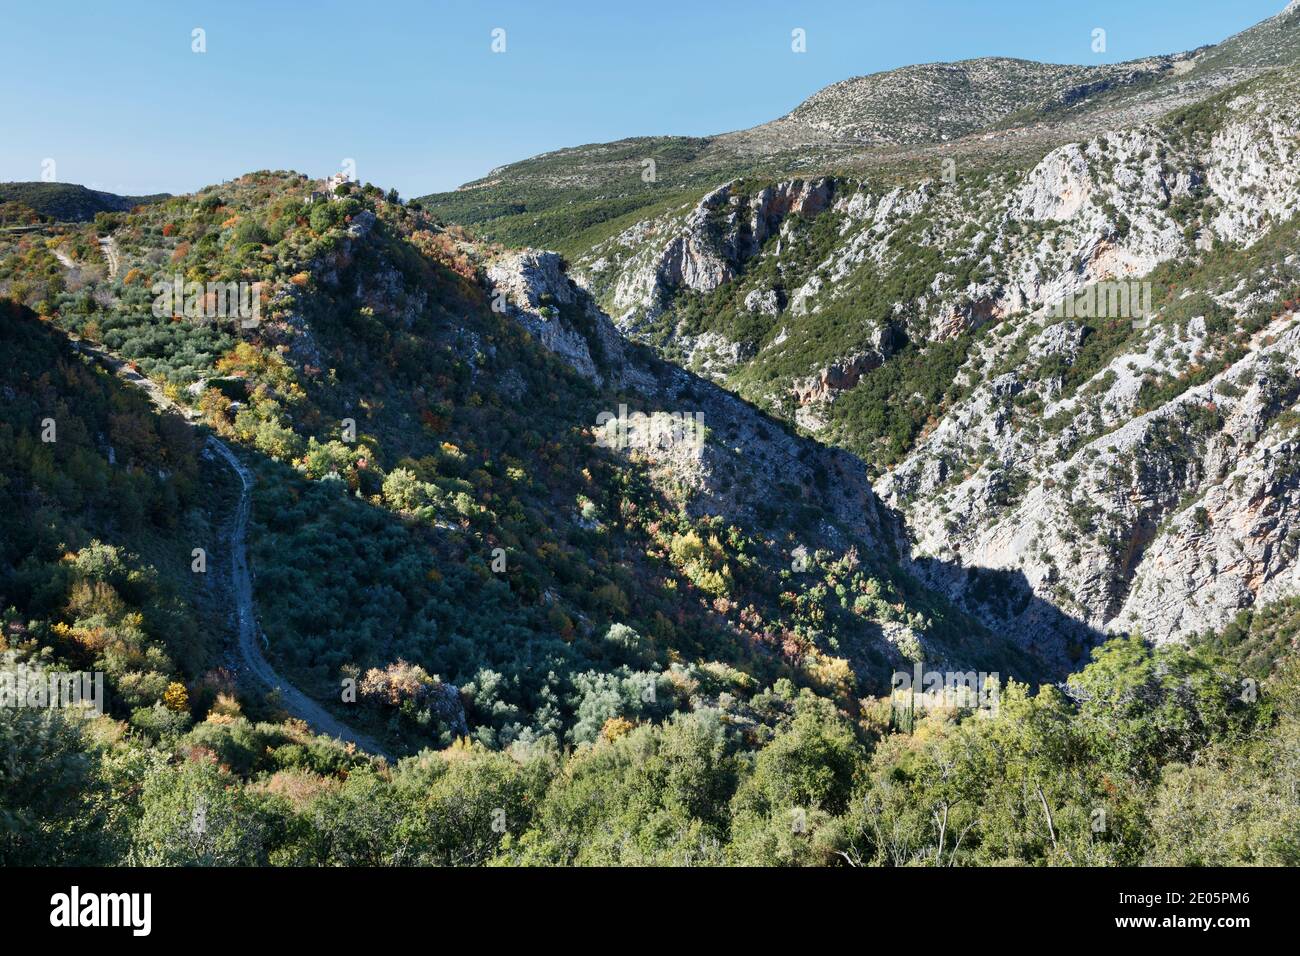 Monastère Profitis Ilias sur le bord de la gorge de Rindomo Dans le Mani de Grèce avec le village d'Altomira dans le distance Banque D'Images